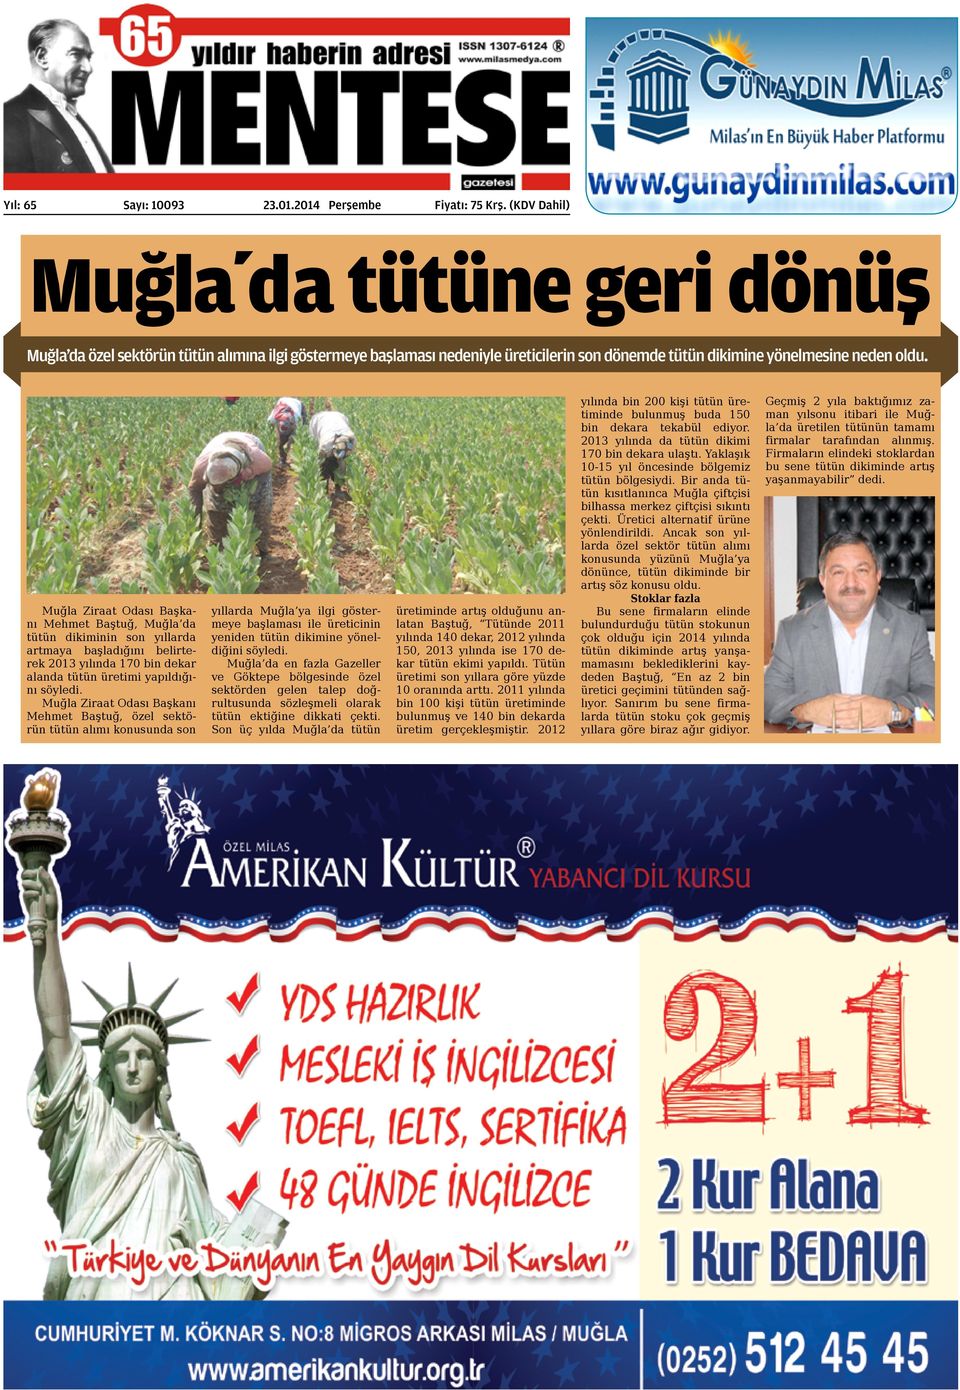 Muğla Ziraat Odası Başkanı Mehmet Baştuğ, Muğla da tütün dikiminin son yıllarda artmaya başladığını belirterek 2013 yılında 170 bin dekar alanda tütün üretimi yapıldığını söyledi.